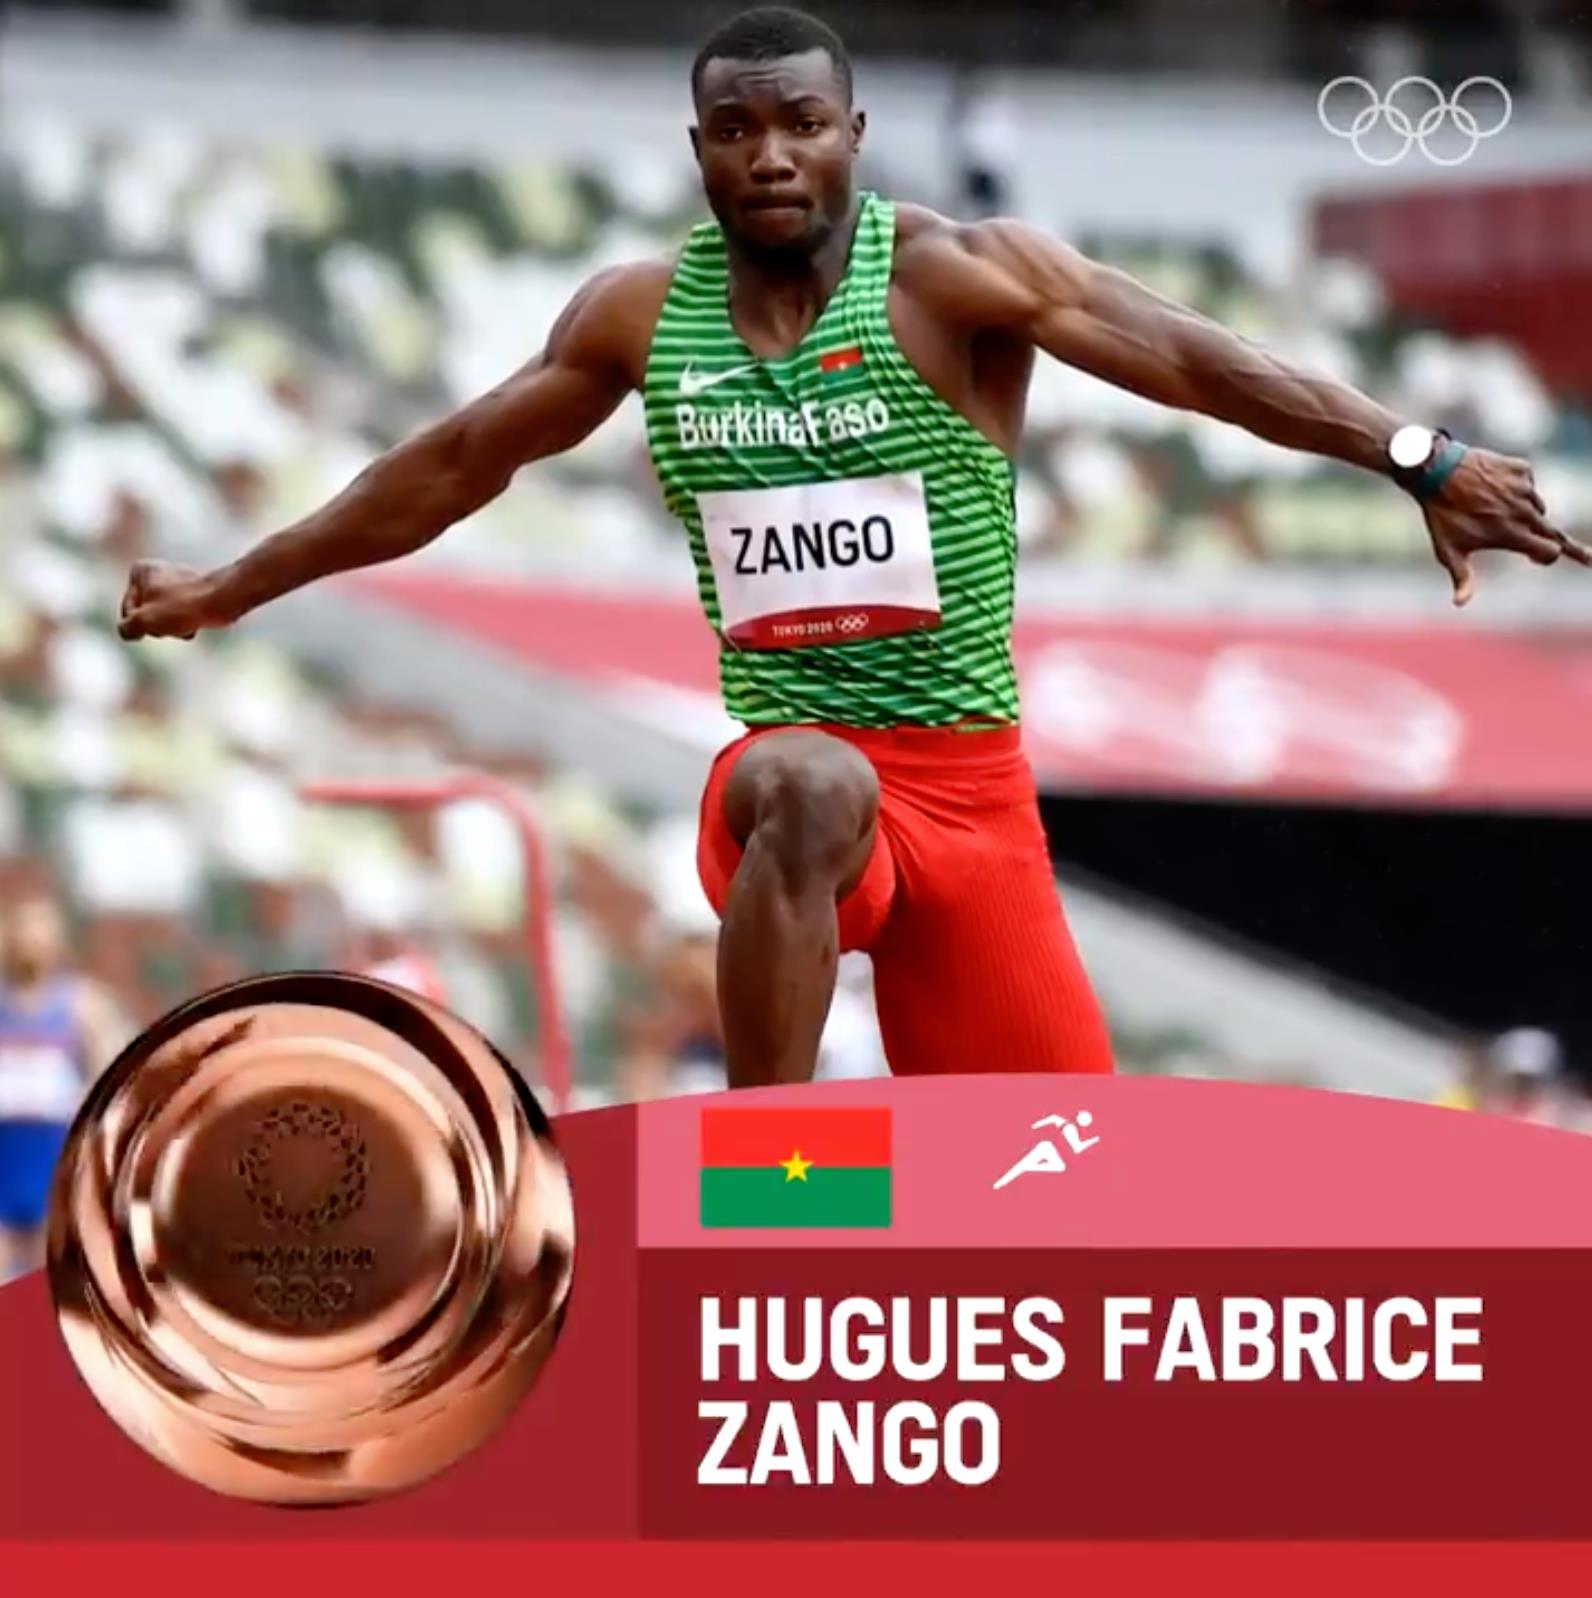 Athlétisme: de l’or pour Hugues Fabrice Zango au Meeting de Montreuil